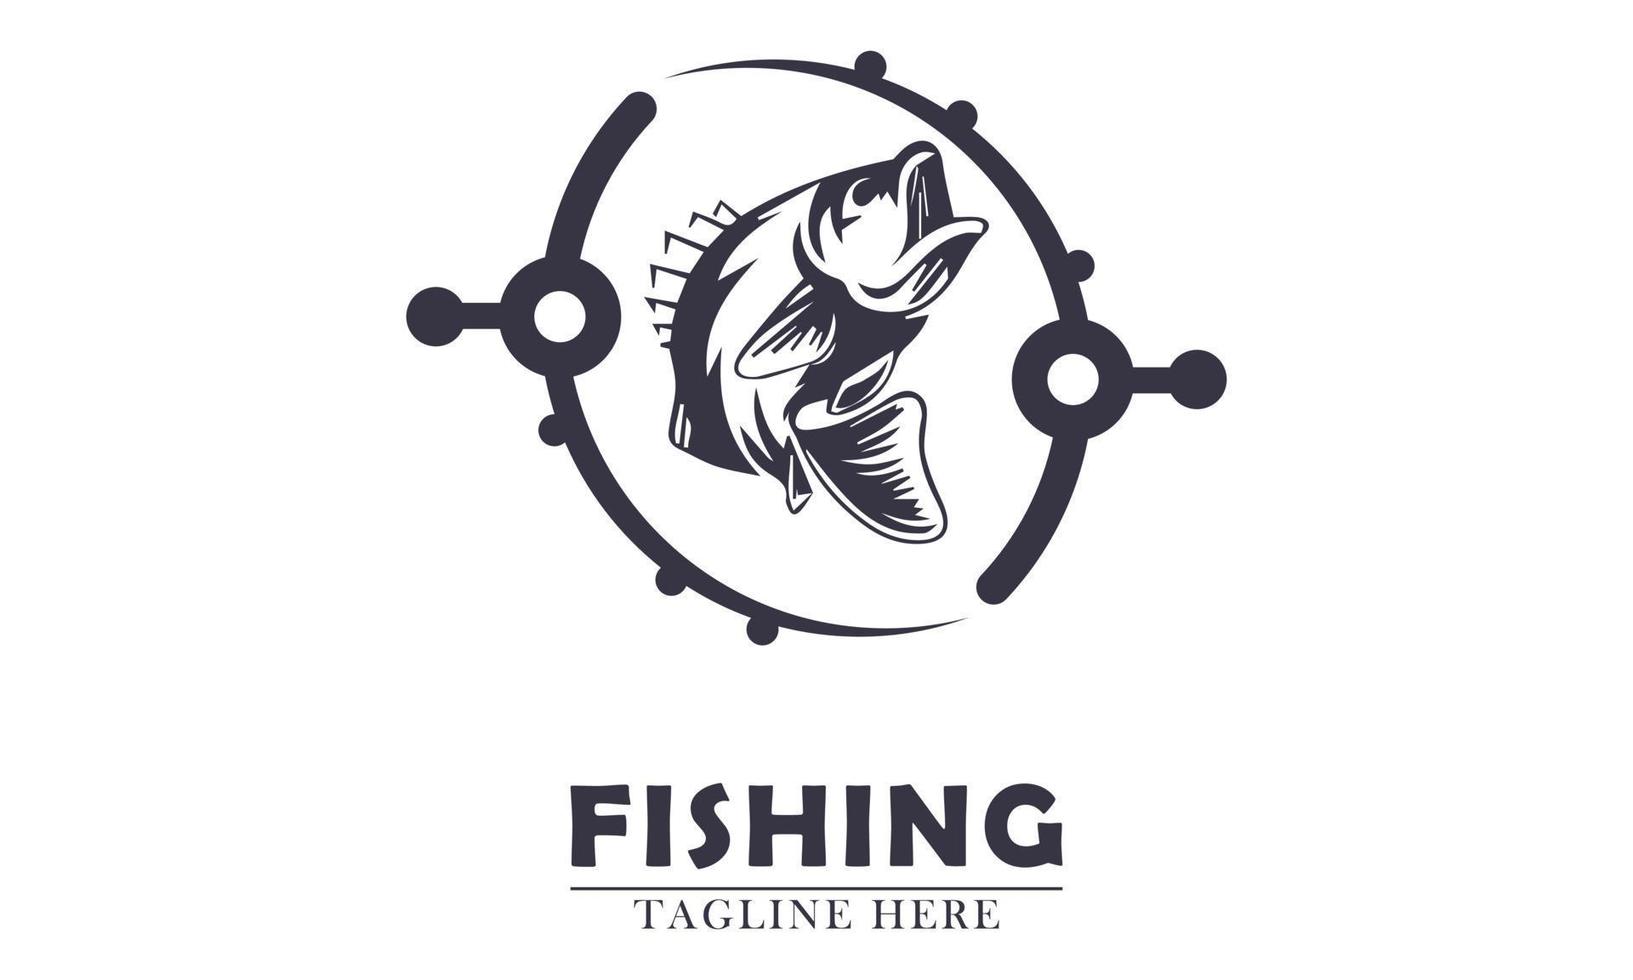 dos cañas de pescar envueltas alrededor de un pez simple ilustración vectorial vector